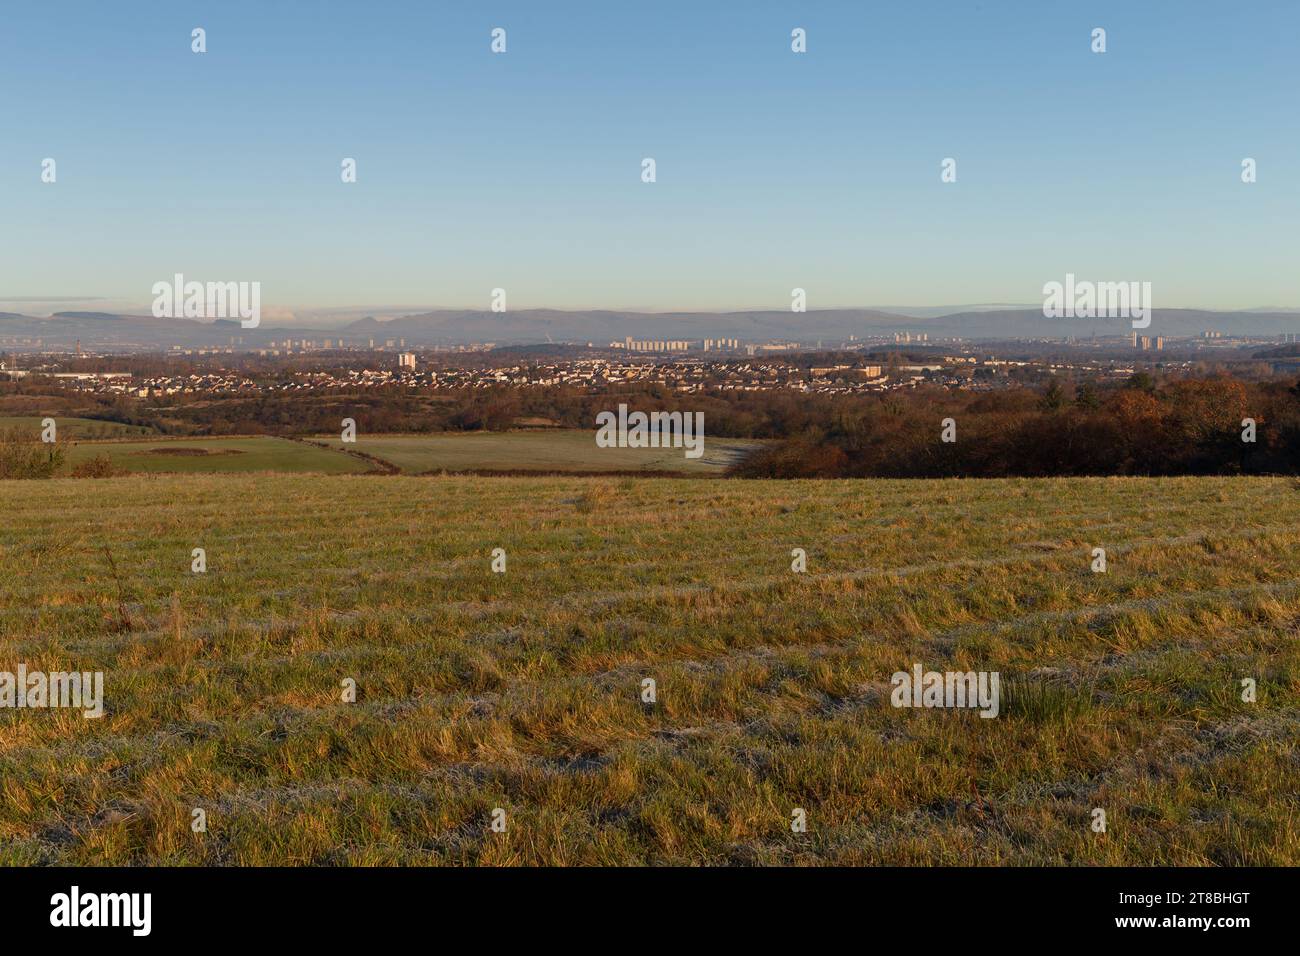 Ein landschaftlicher Blick auf die Stadt Glasgow, von den Hügeln über ihr im Süden an einem kalten Wintermorgen gesehen. Stockfoto